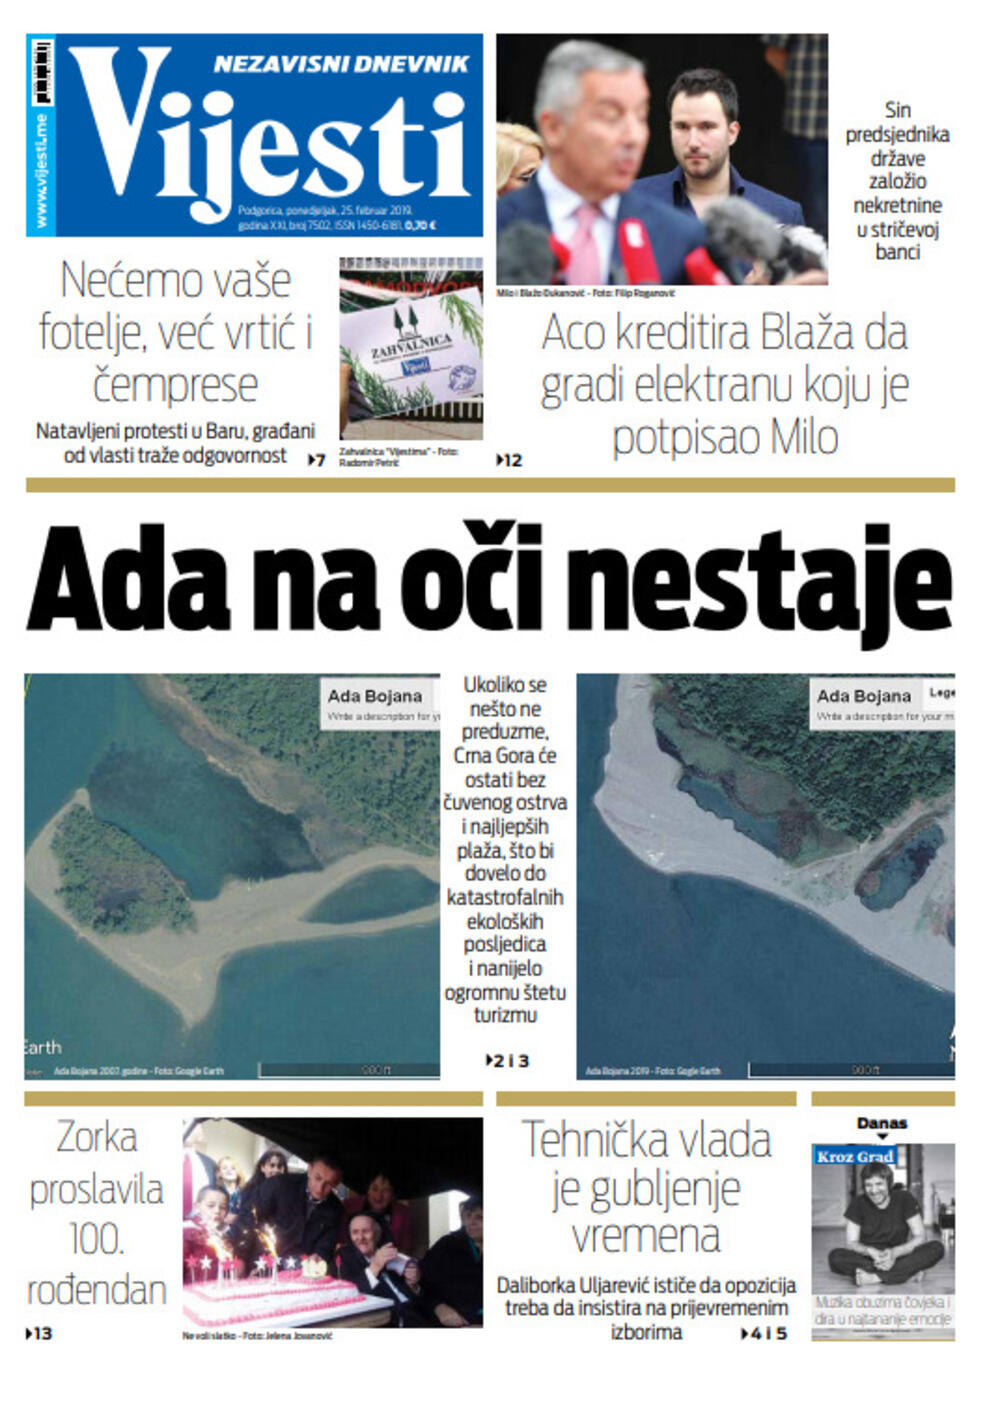 Naslovna strana "Vijesti" za 25. februar, Foto: "Vijesti"